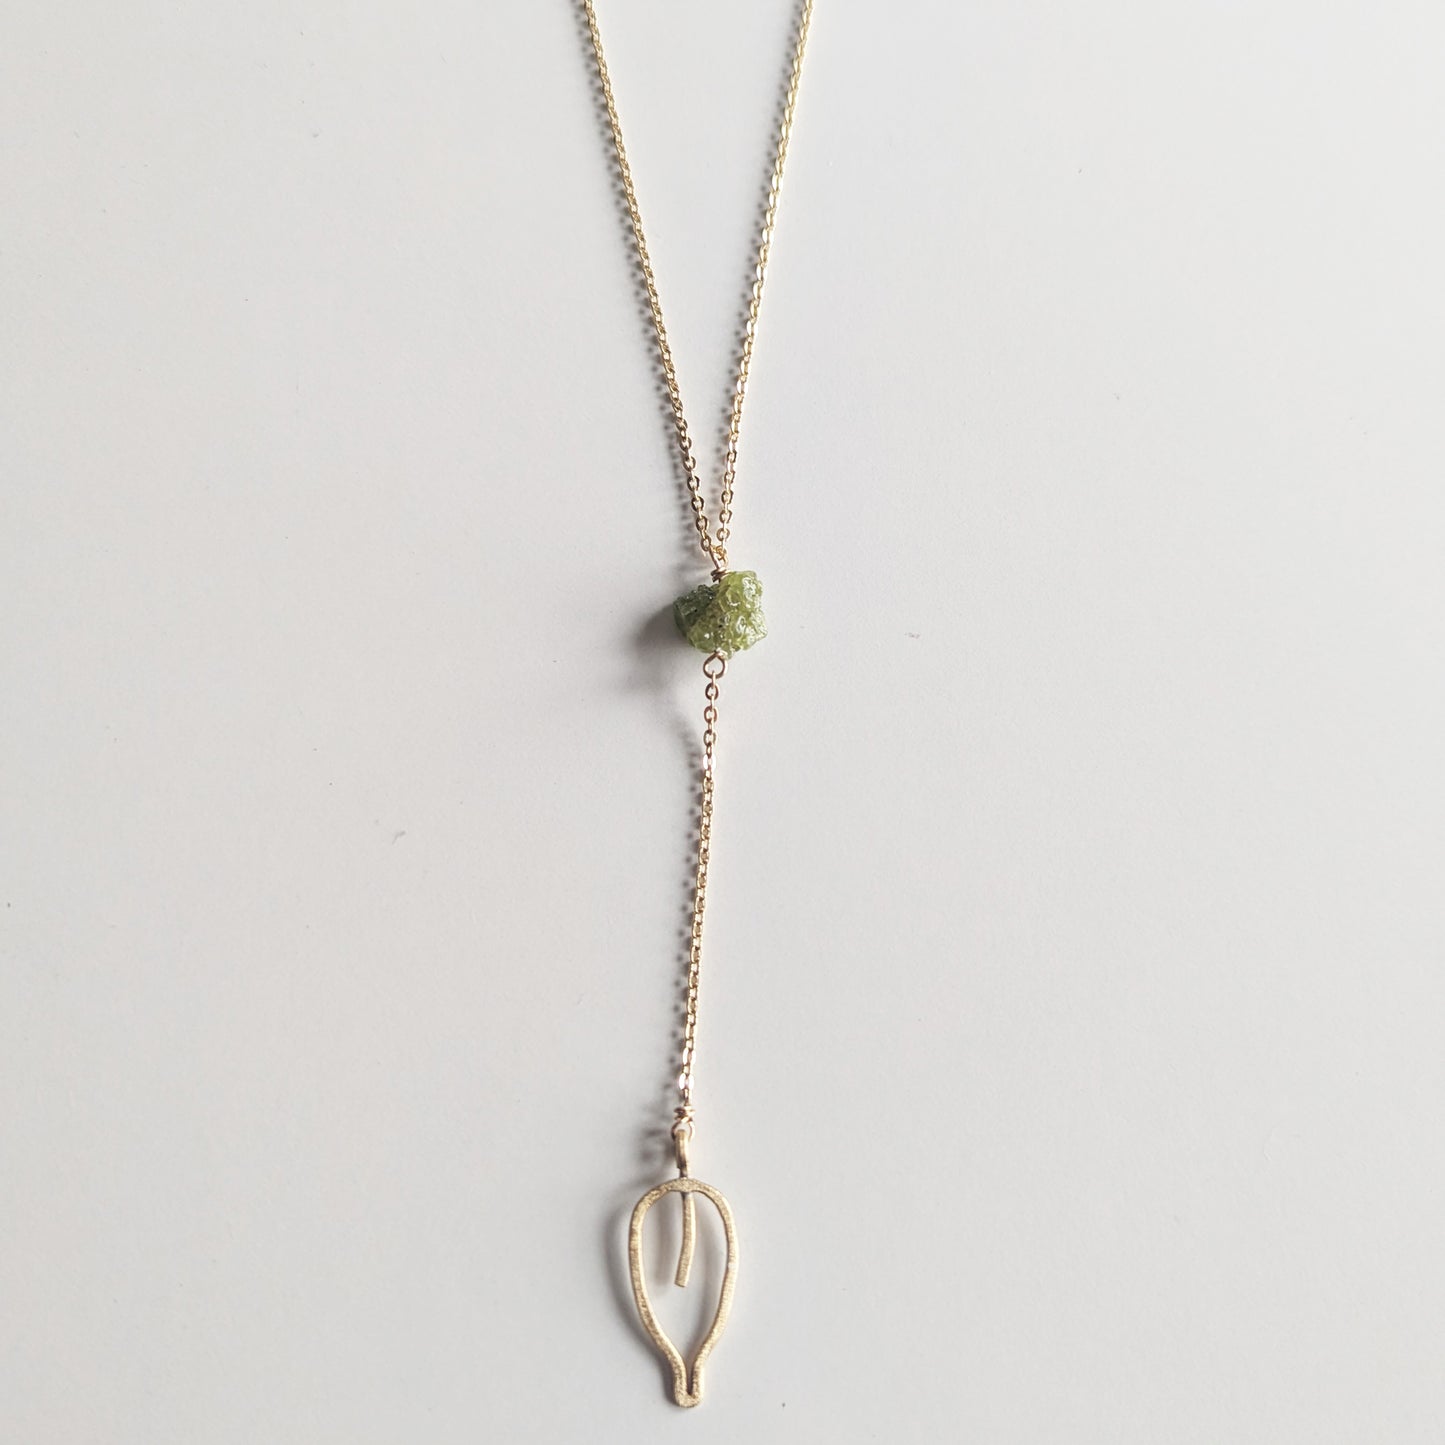 The Ivy Y necklace